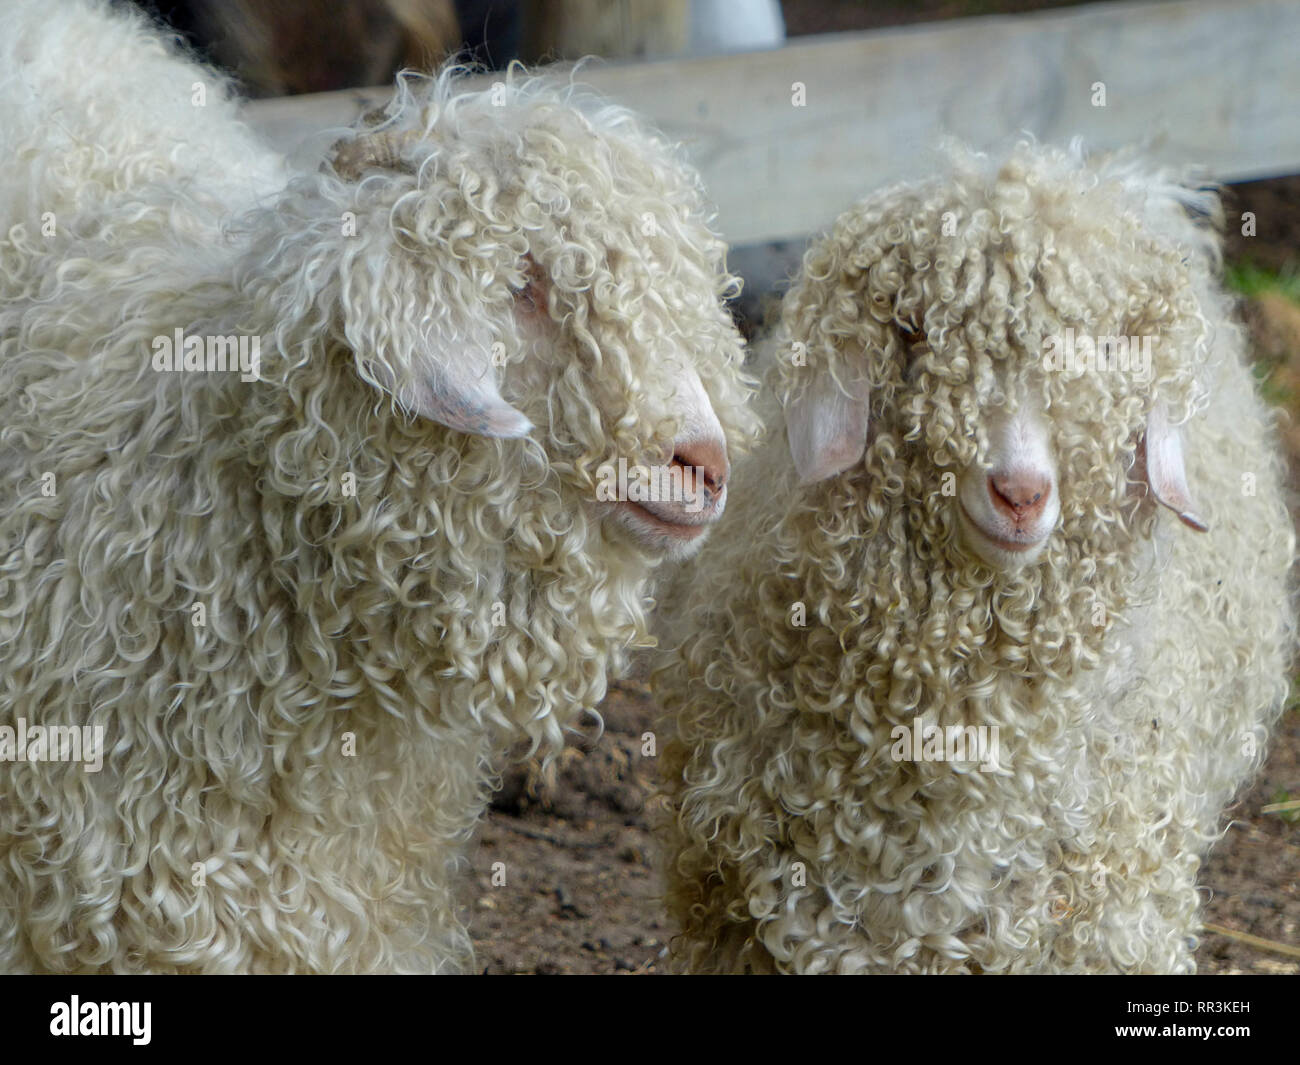 Lange schröpfen Rasse der Schafe. Auf South Island, Neuseeland fotografiert. Stockfoto